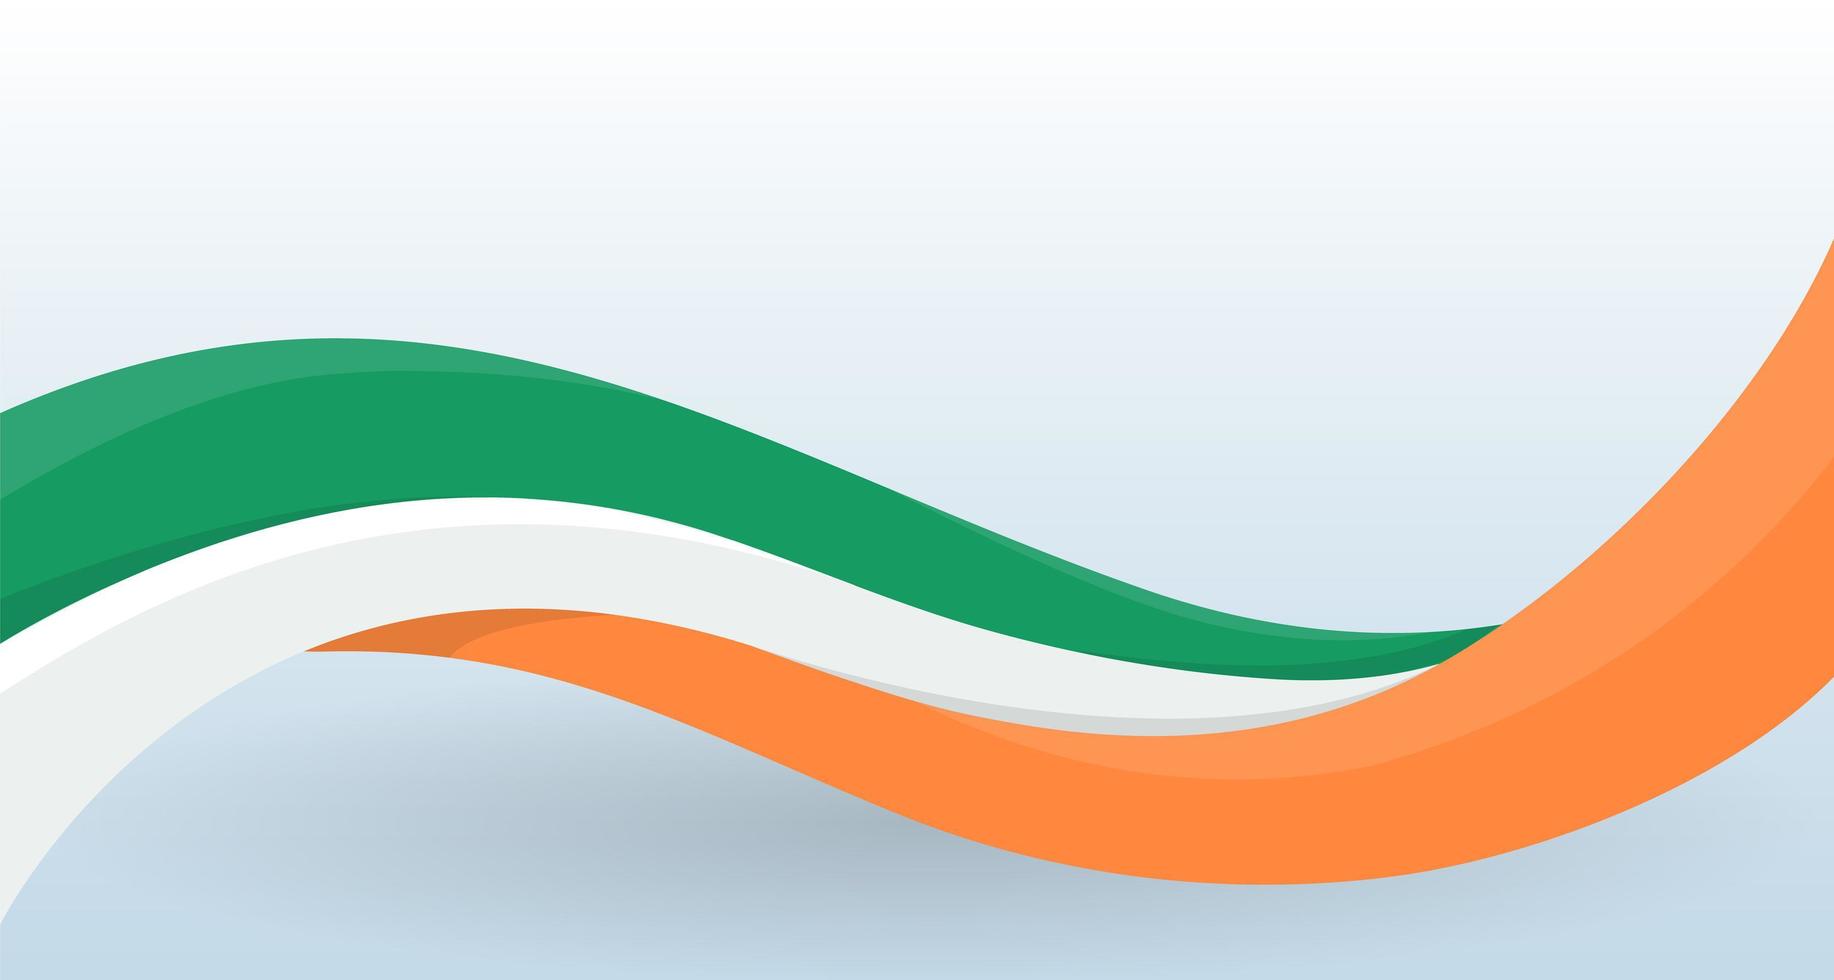 l'irlande agitant le drapeau national. forme inhabituelle moderne. modèle de conception pour la décoration de flyer et carte, affiche, bannière et logo. illustration vectorielle isolée. vecteur